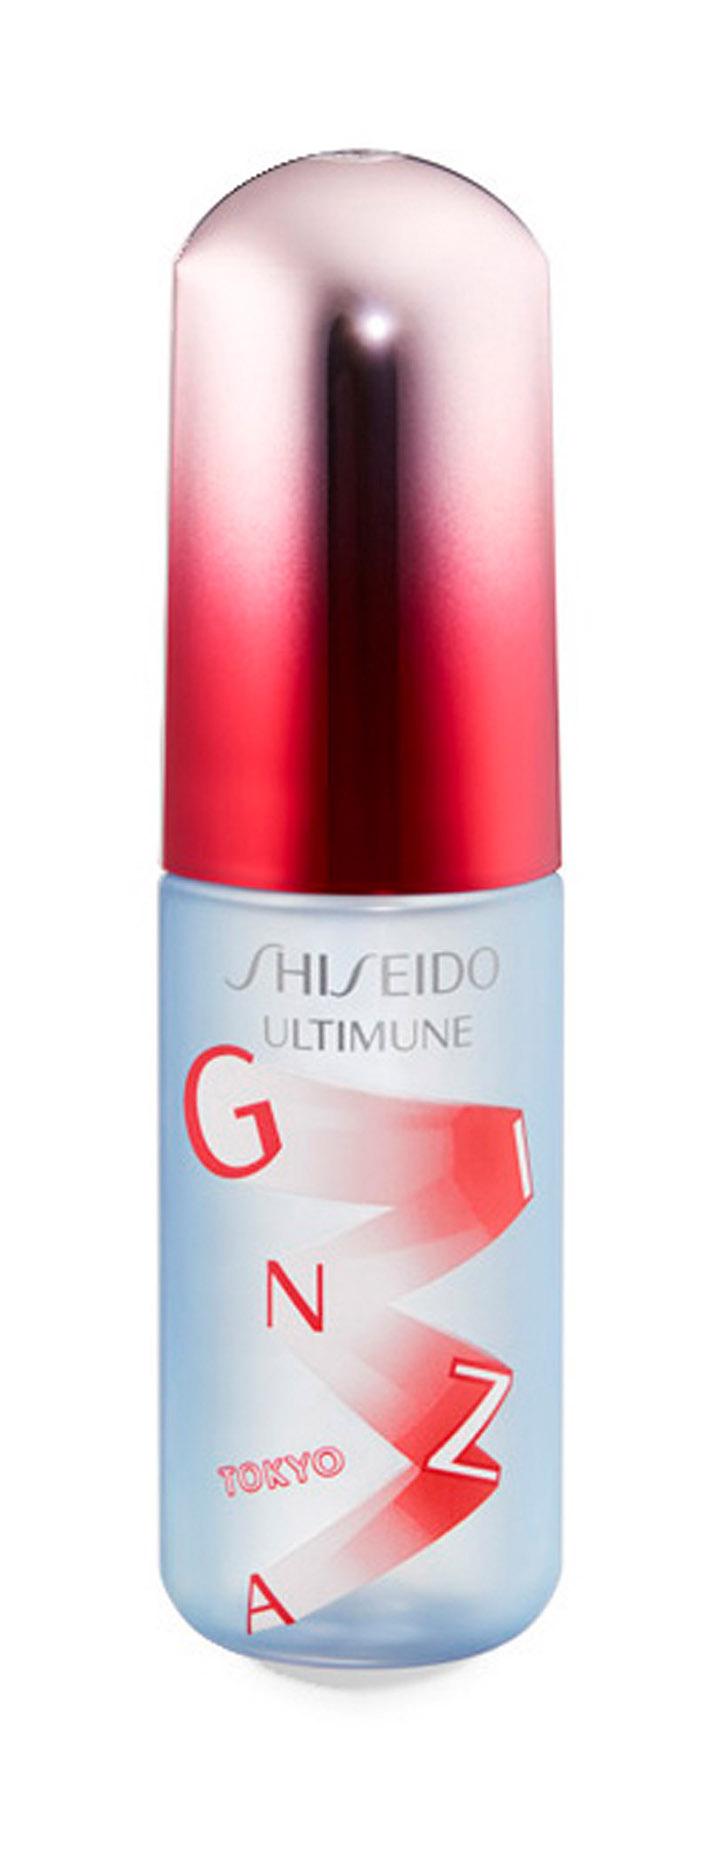 Освежающий мист для лица Shiseido Ultimune Defense Refresh Mist Duo защитный, 60 мл освежающий тоник мист для лица тела и волос otium summer